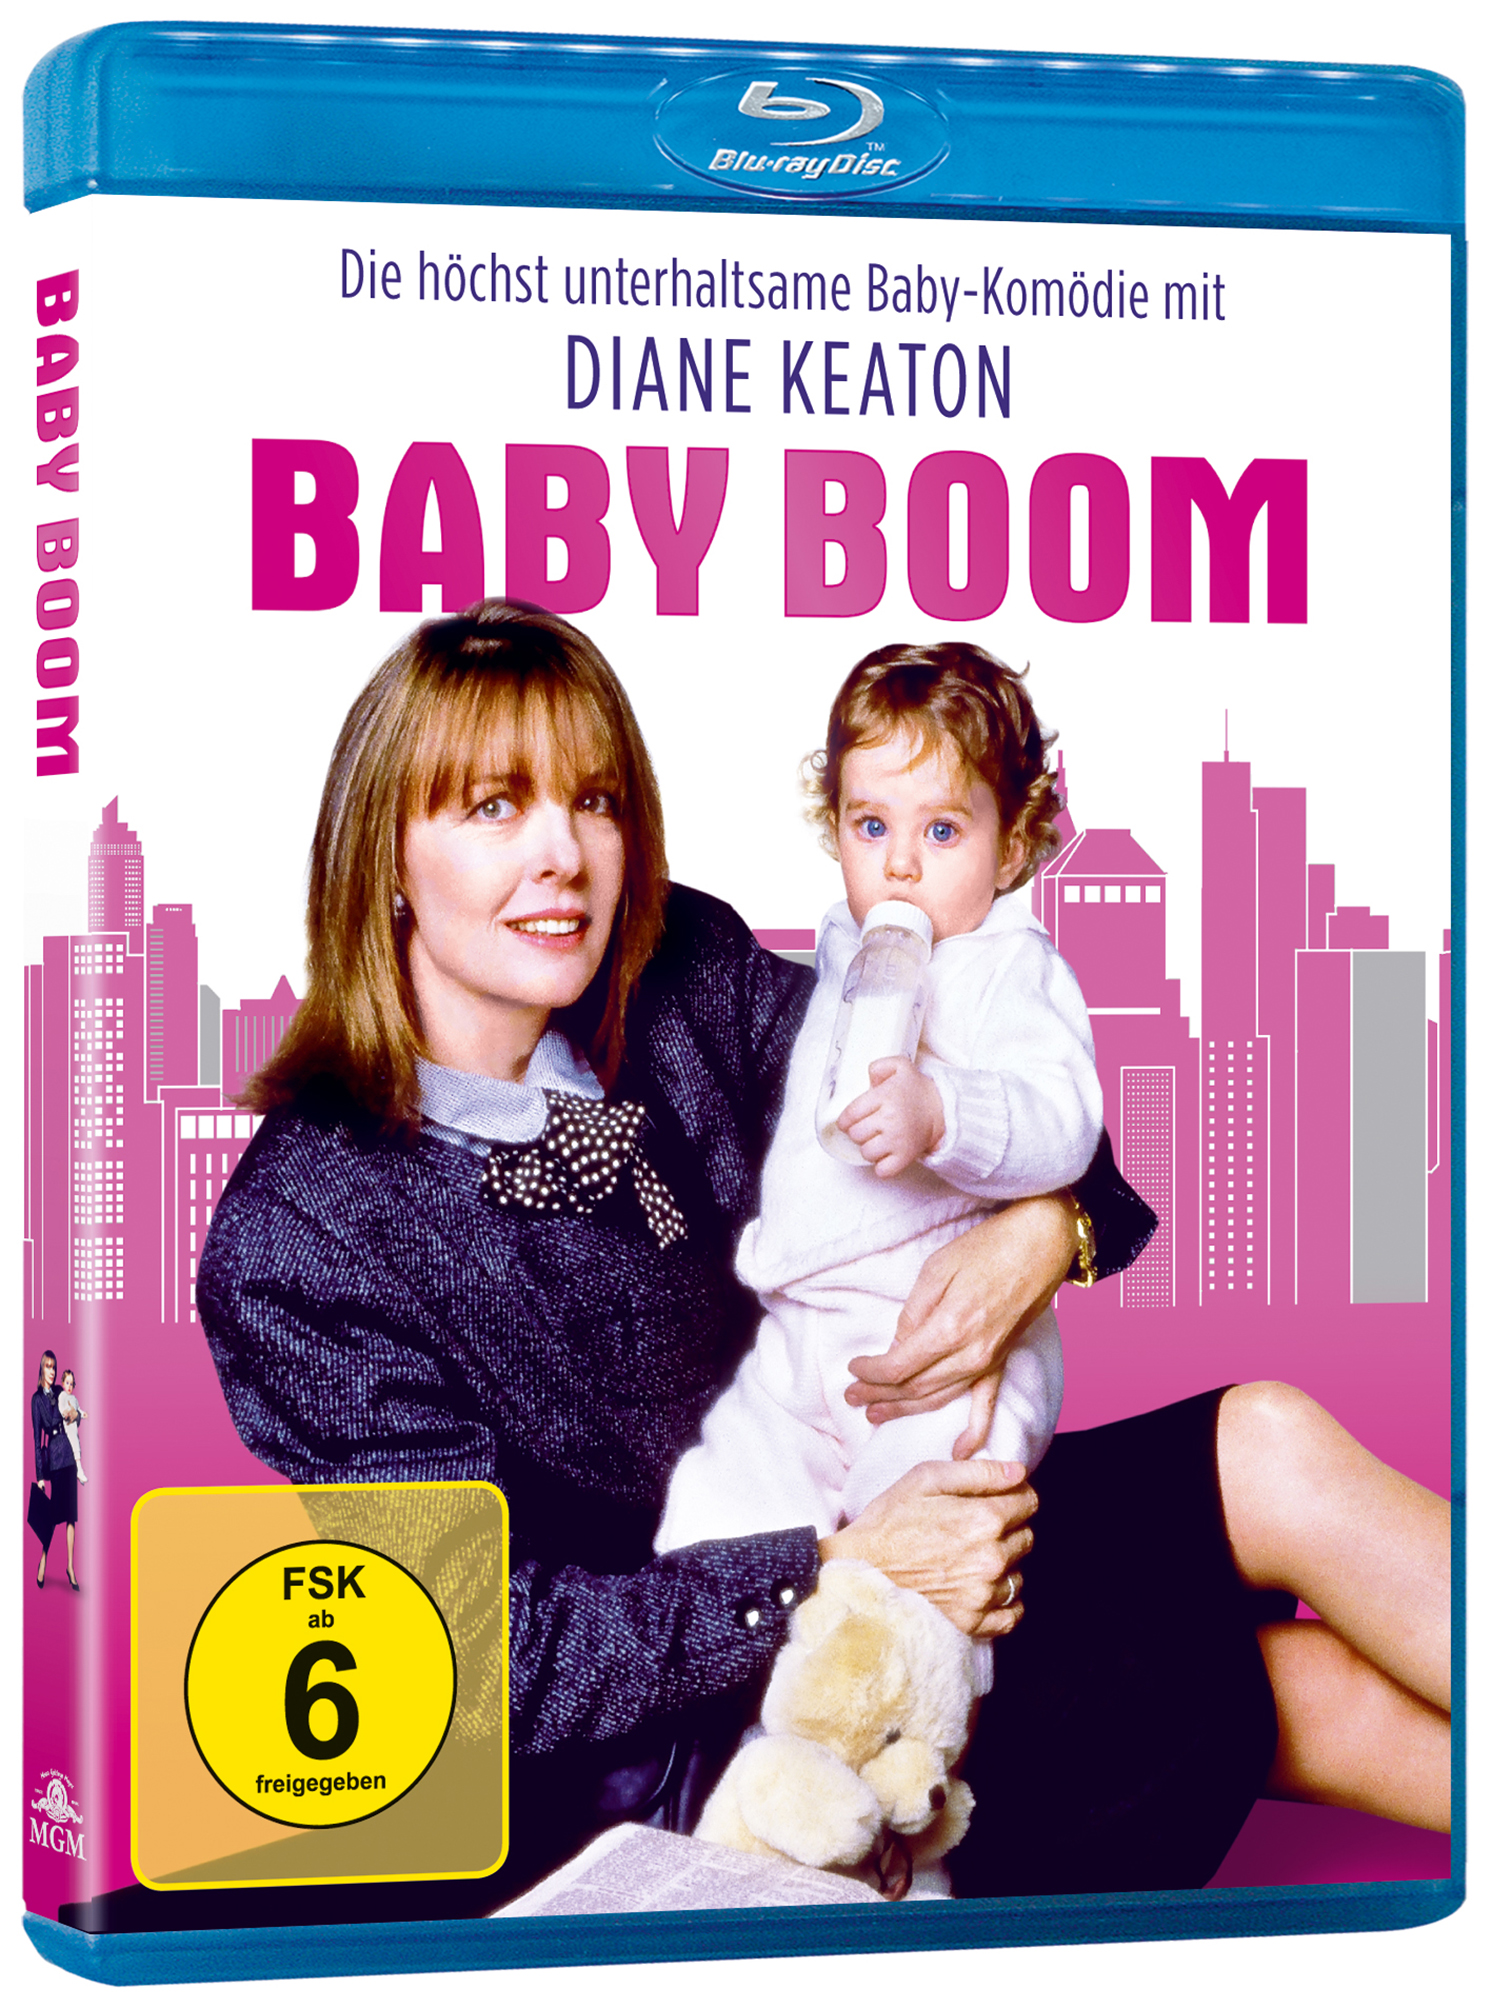 Baby Boom schöne - Bescherung Eine Blu-ray